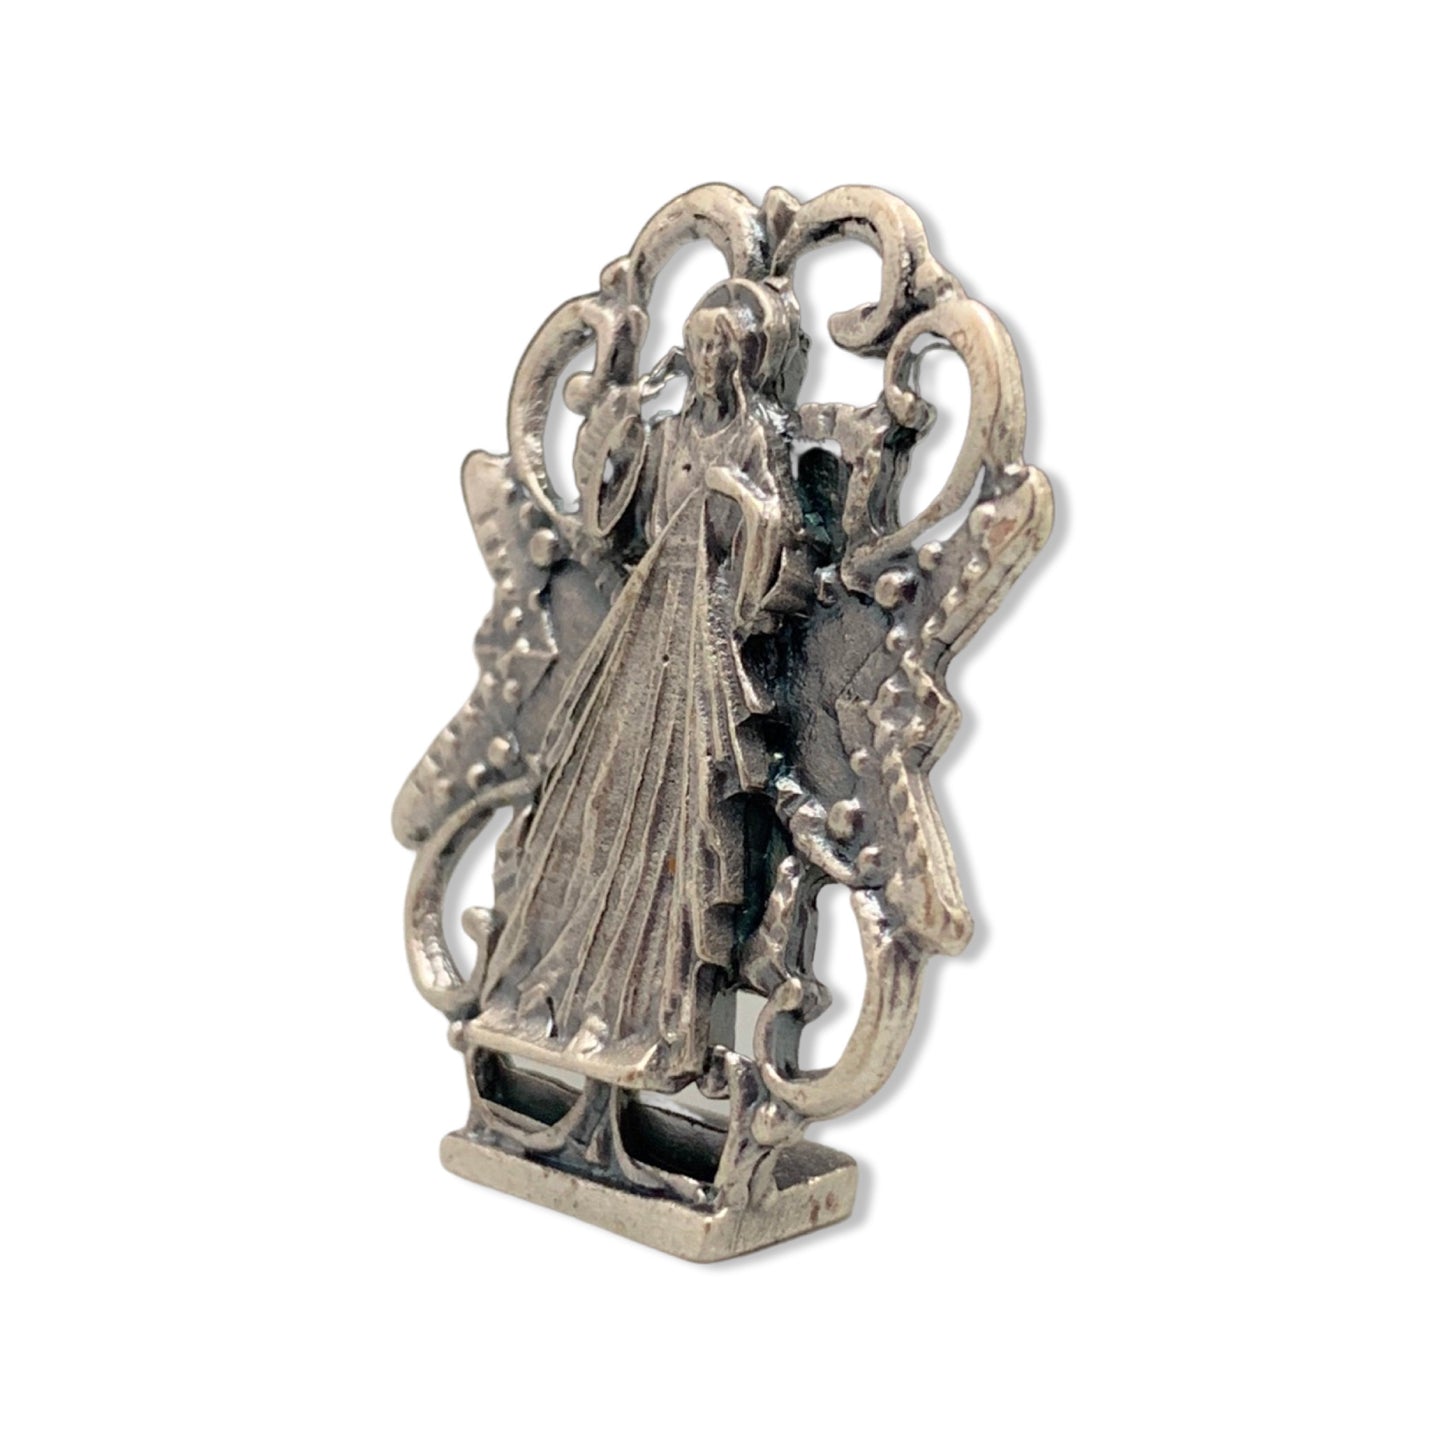 Embellished Divine Mercy Image